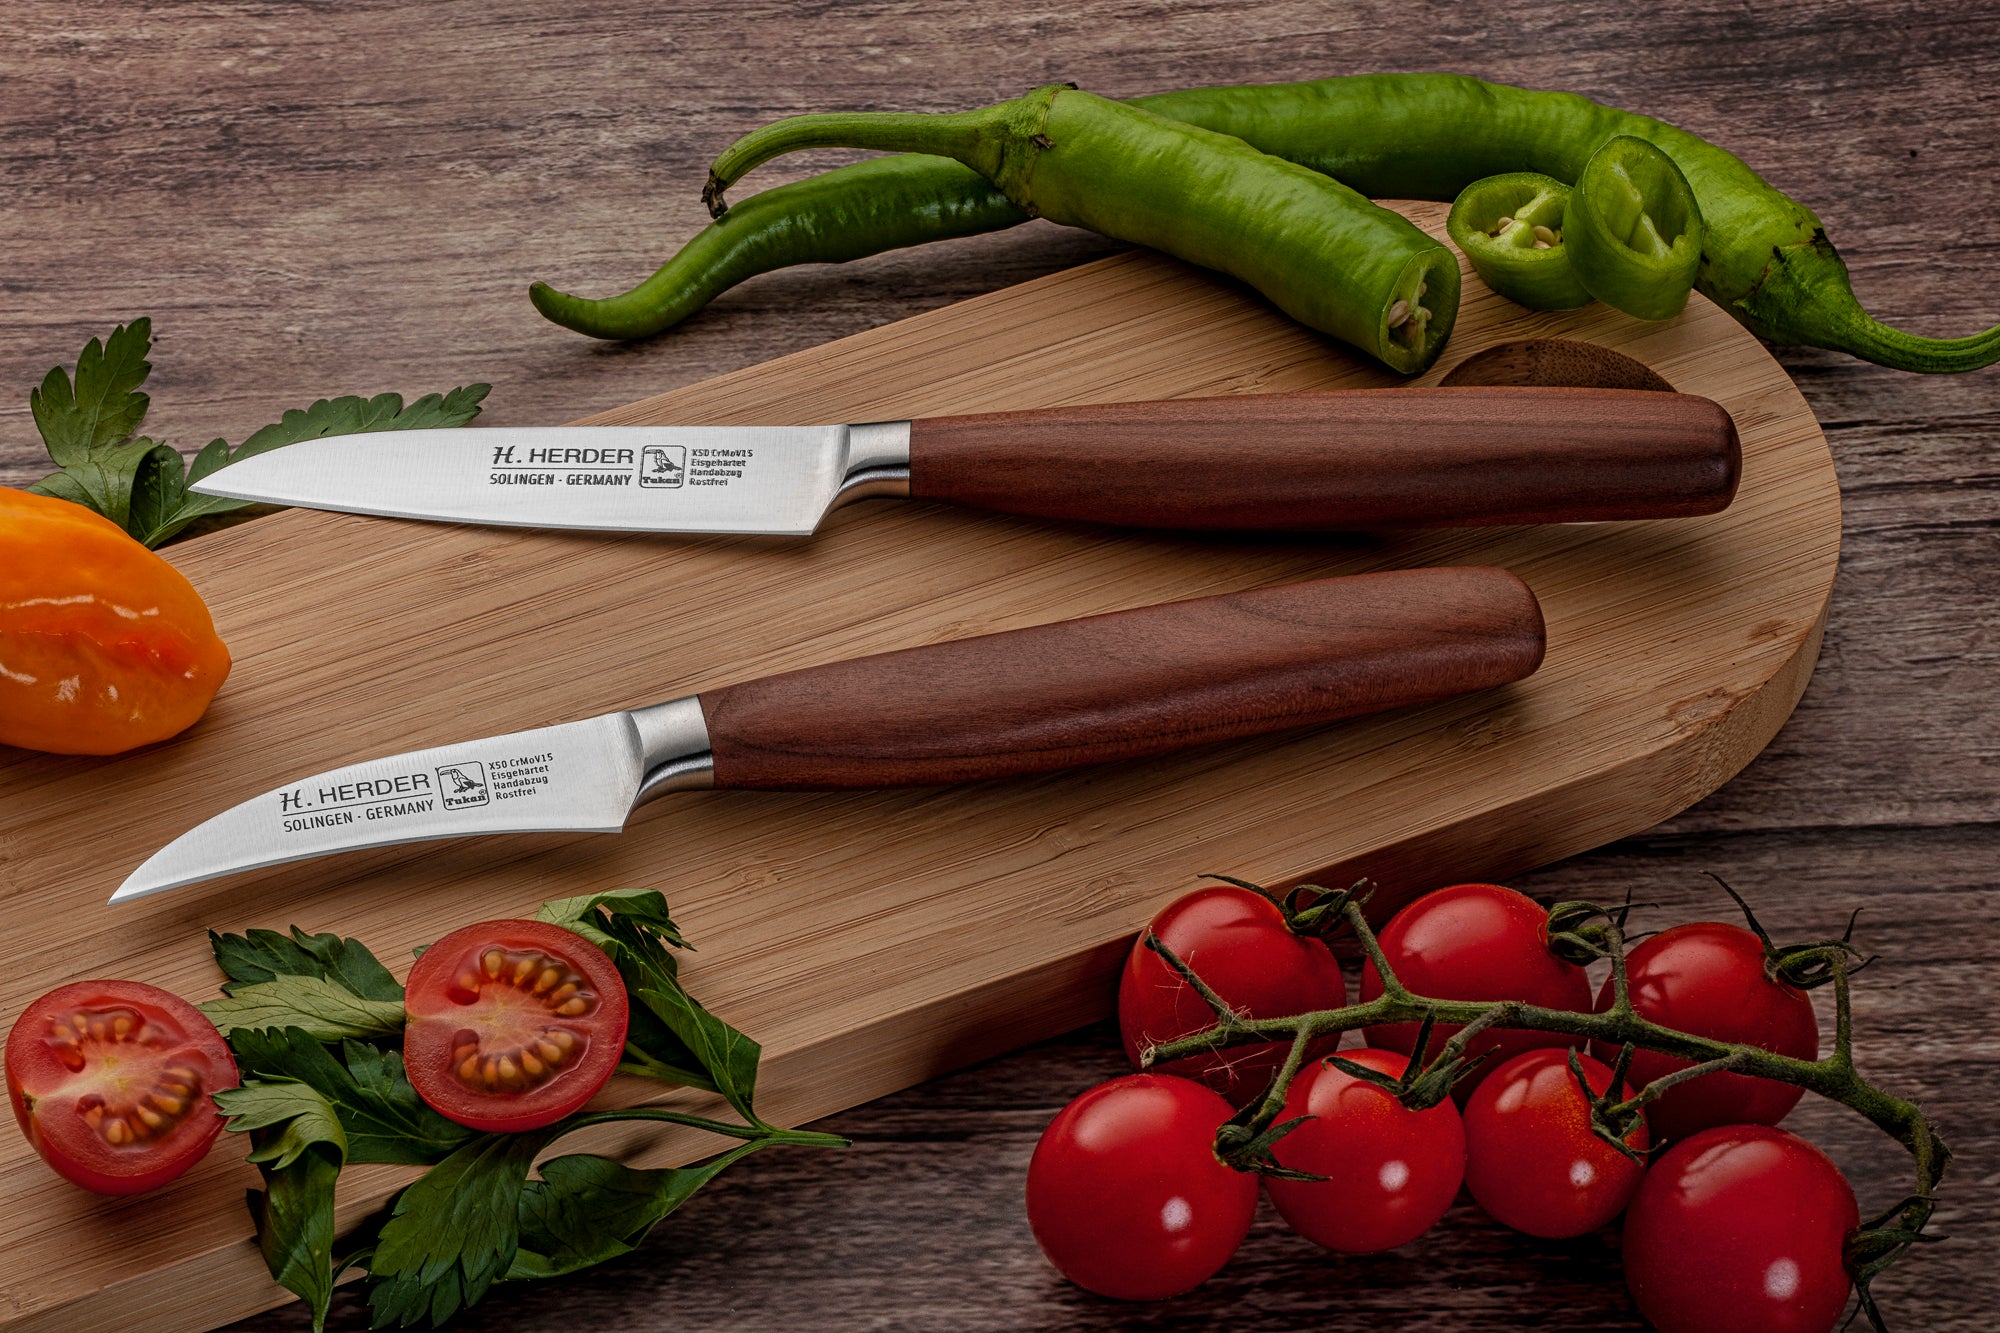 El Cuchillo adecuado para cortar verduras, Belén Frutería